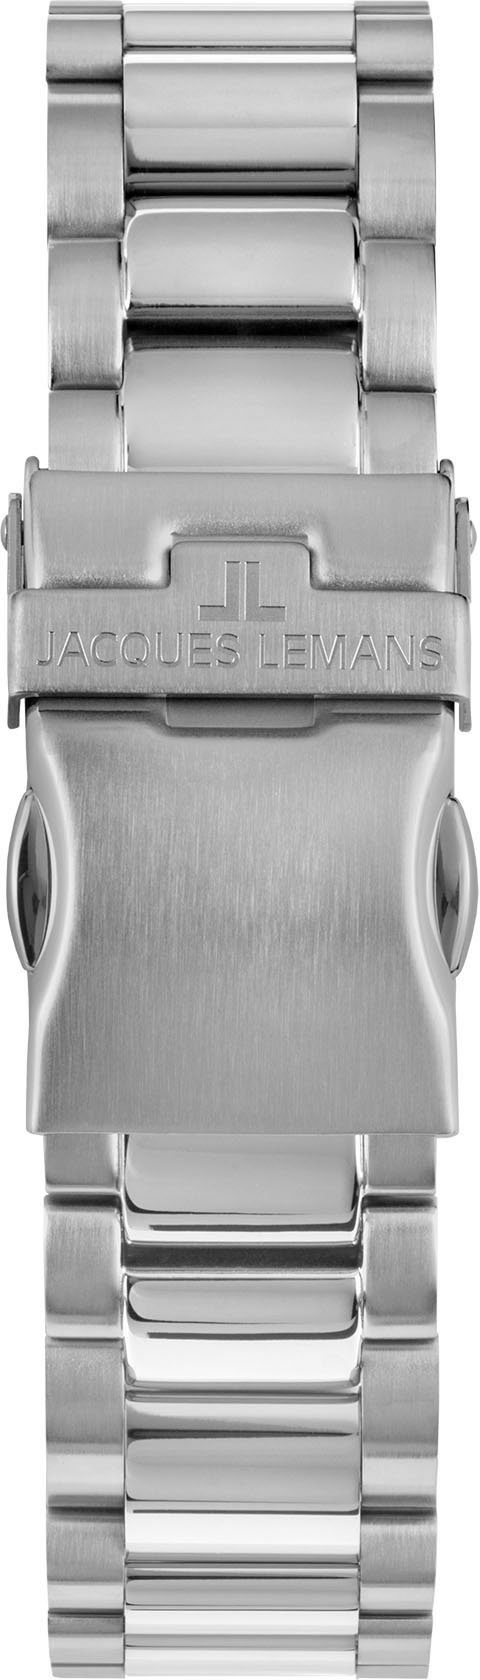 Jacques Liverpool, Chronograph Lemans 1-2140K